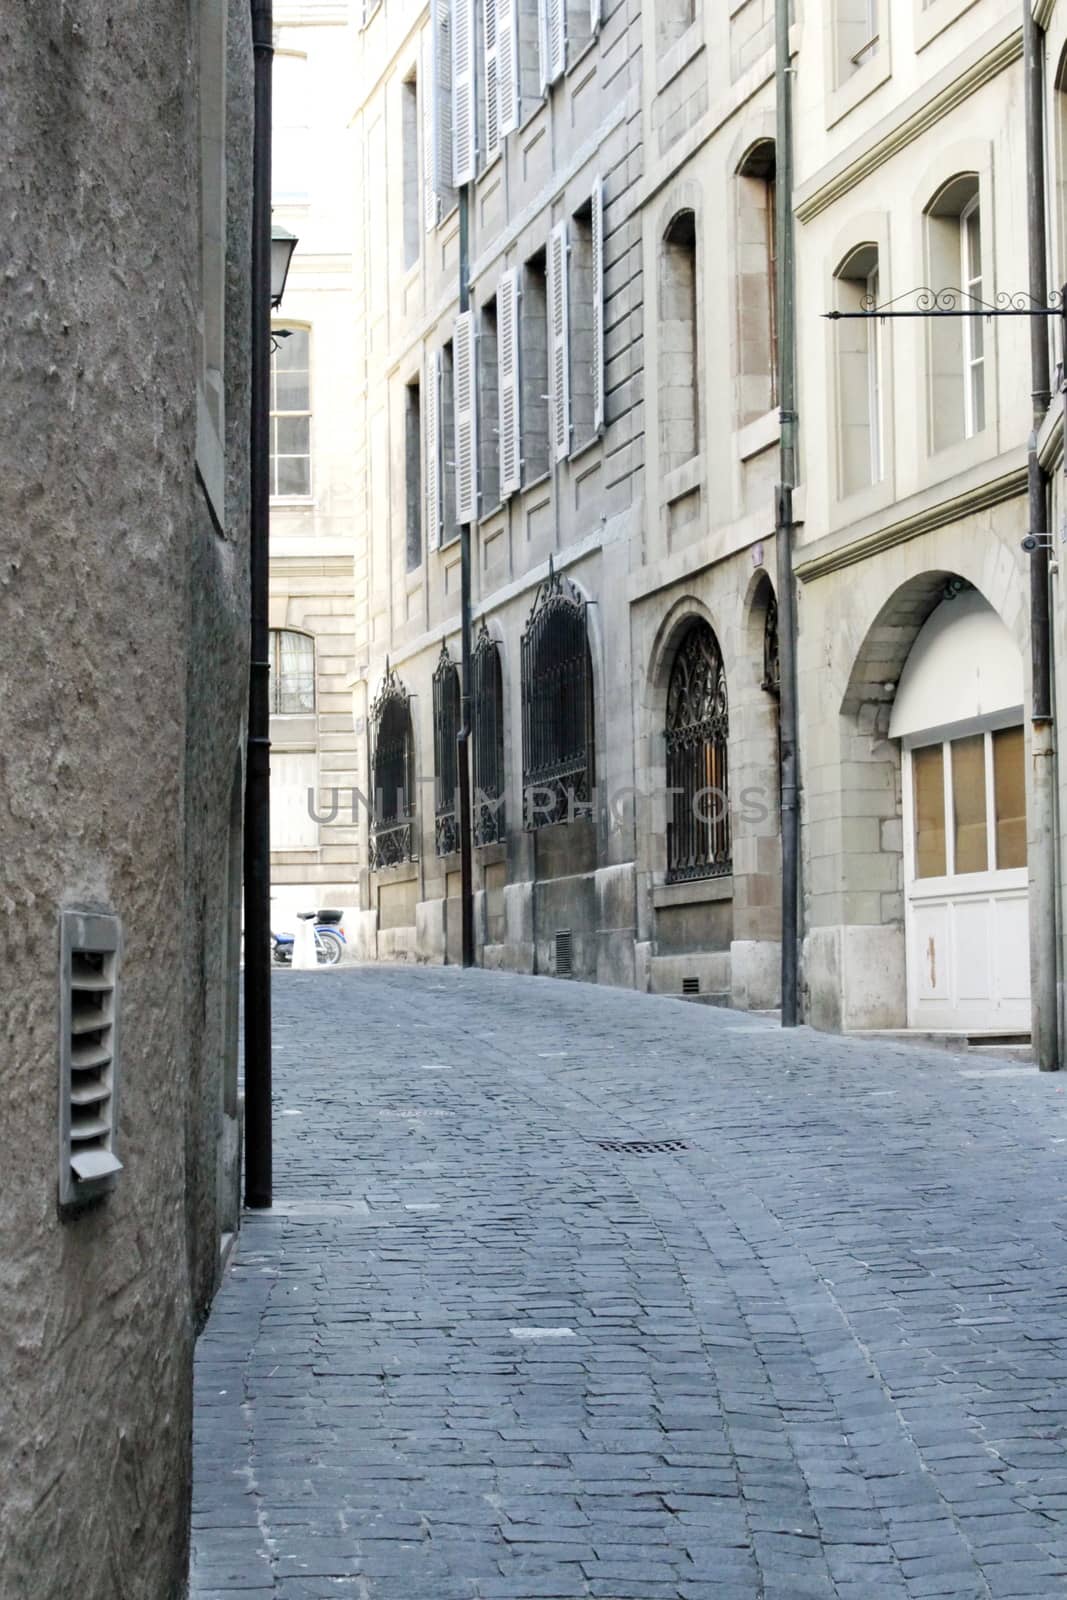 Street with stones in old city of Geneva, Switzerland